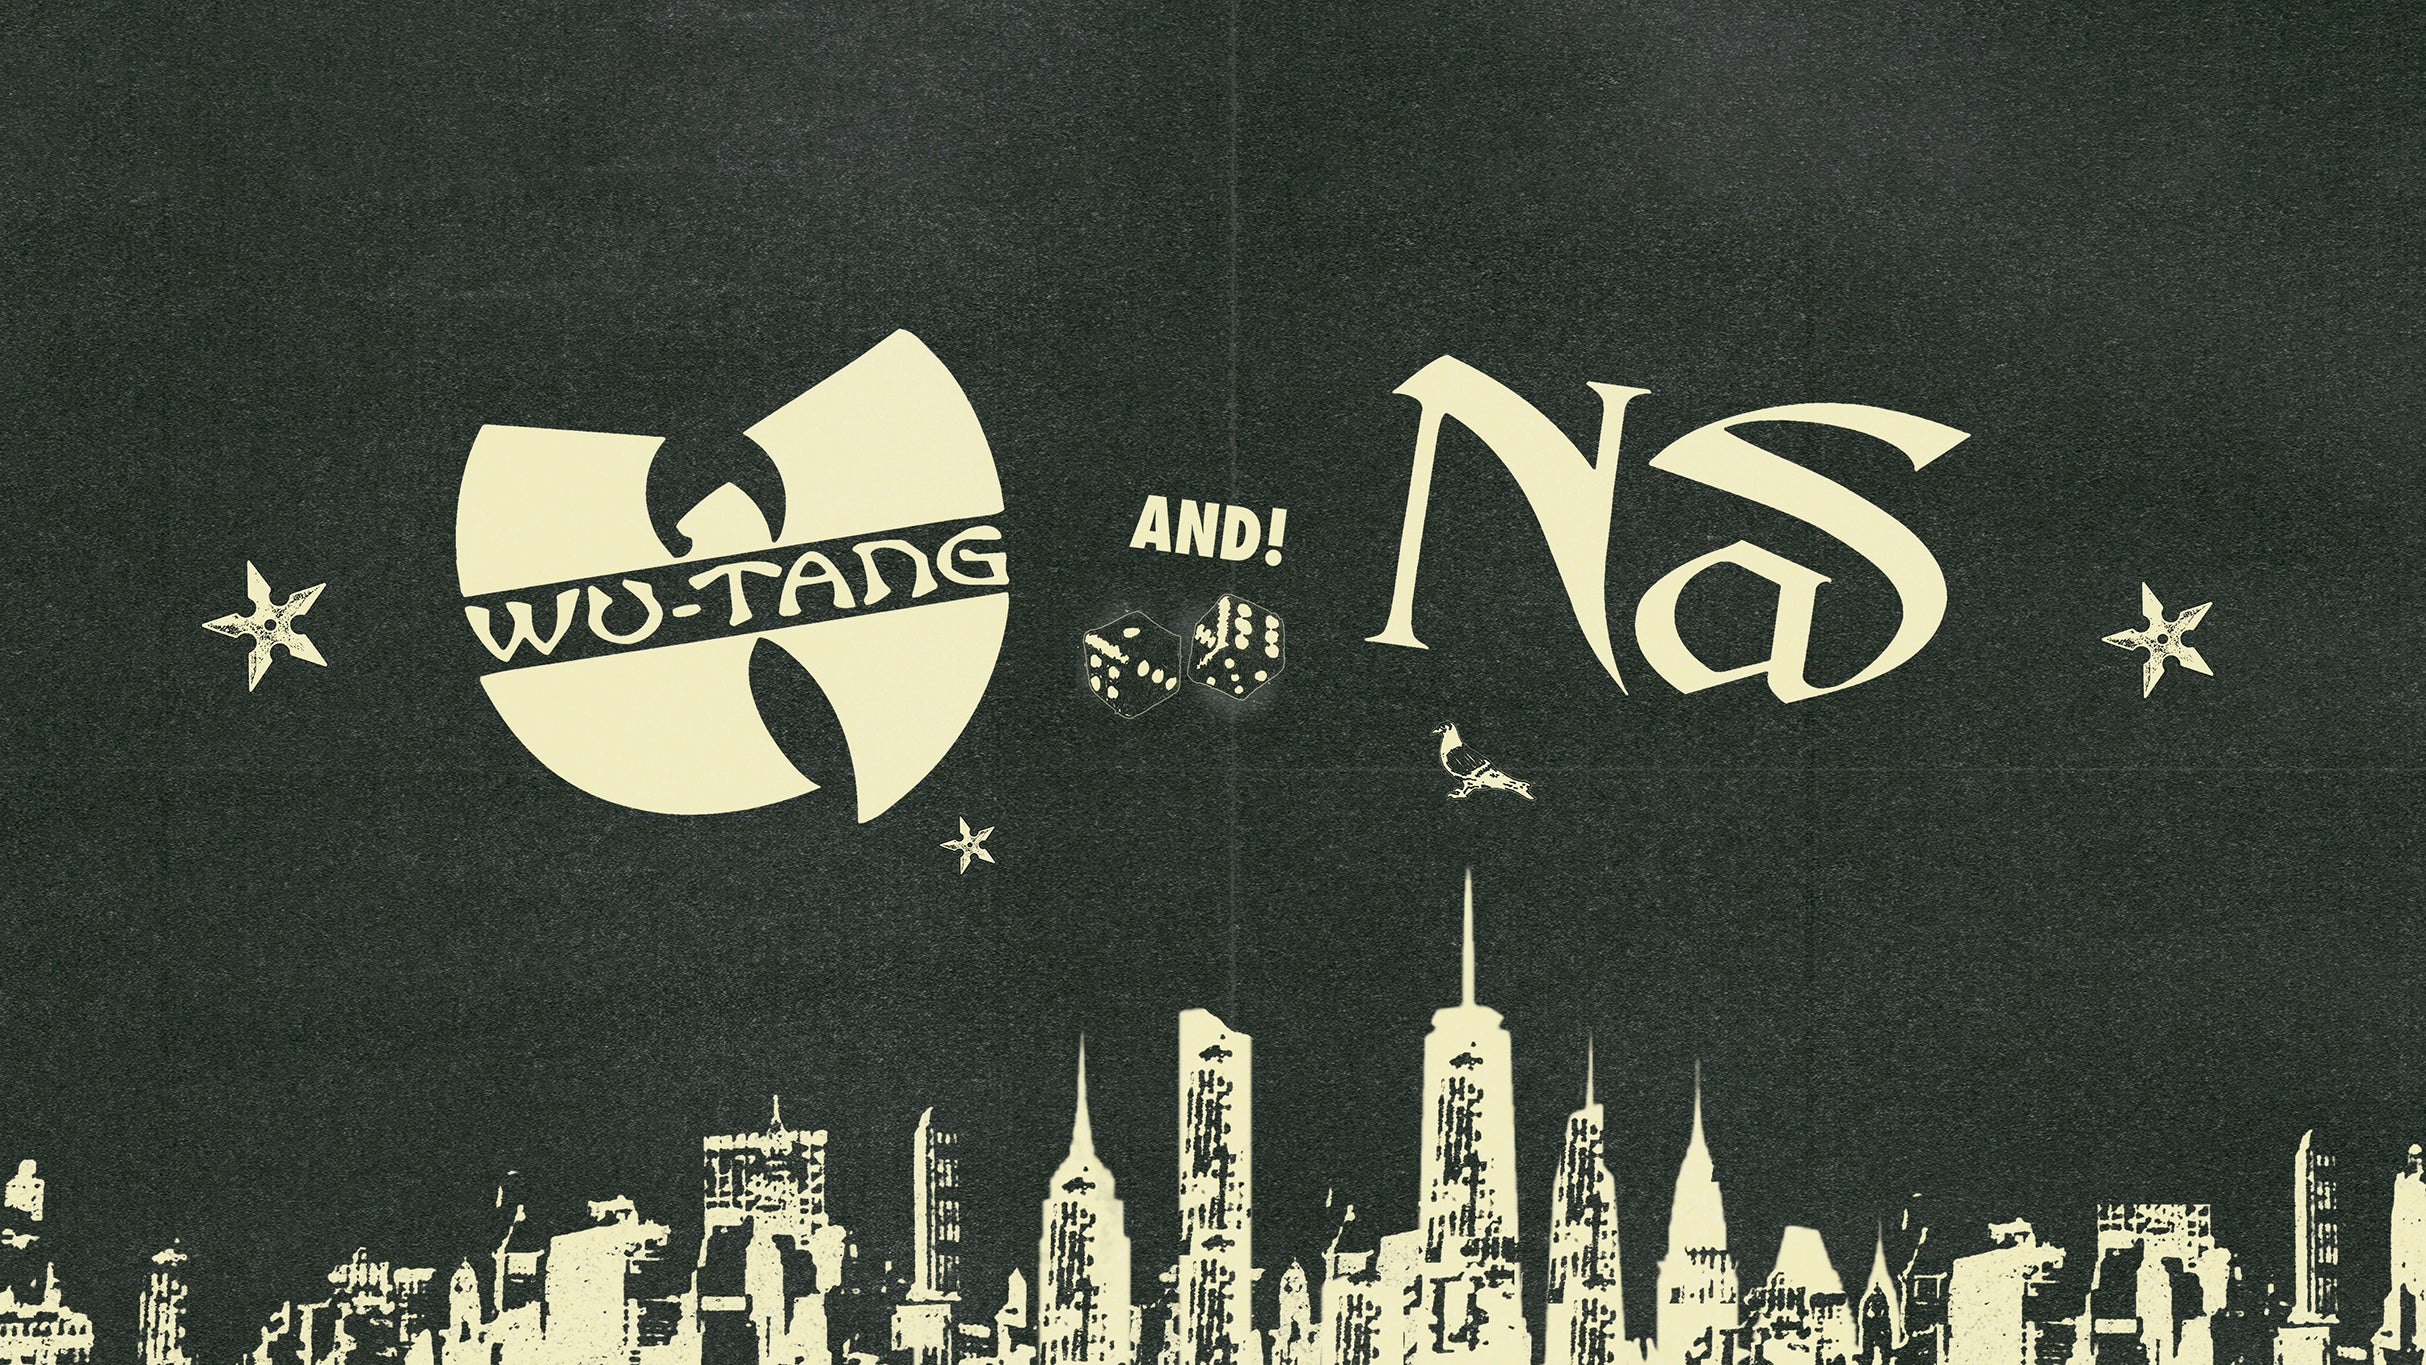 Wu-Tang Clan & Nas: NY State Of Mind Tour at Hollywood Bowl